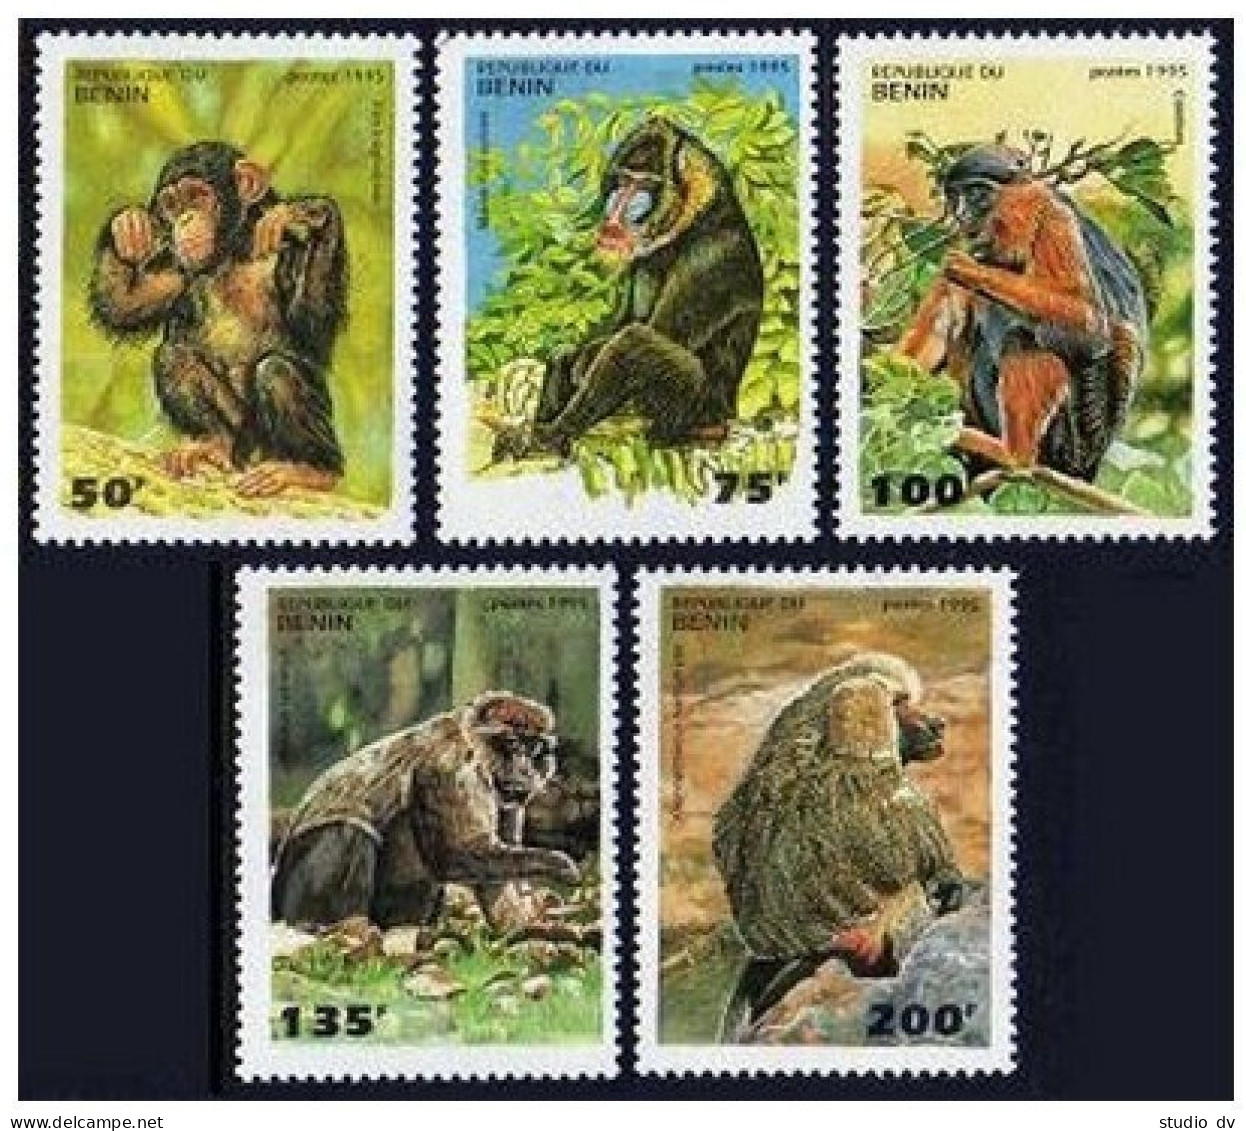 Benin 755-759,760, MNH. Primates 1995. Monkey.Pan Troglodytes, Mandrillus Sphinx - Benin – Dahomey (1960-...)